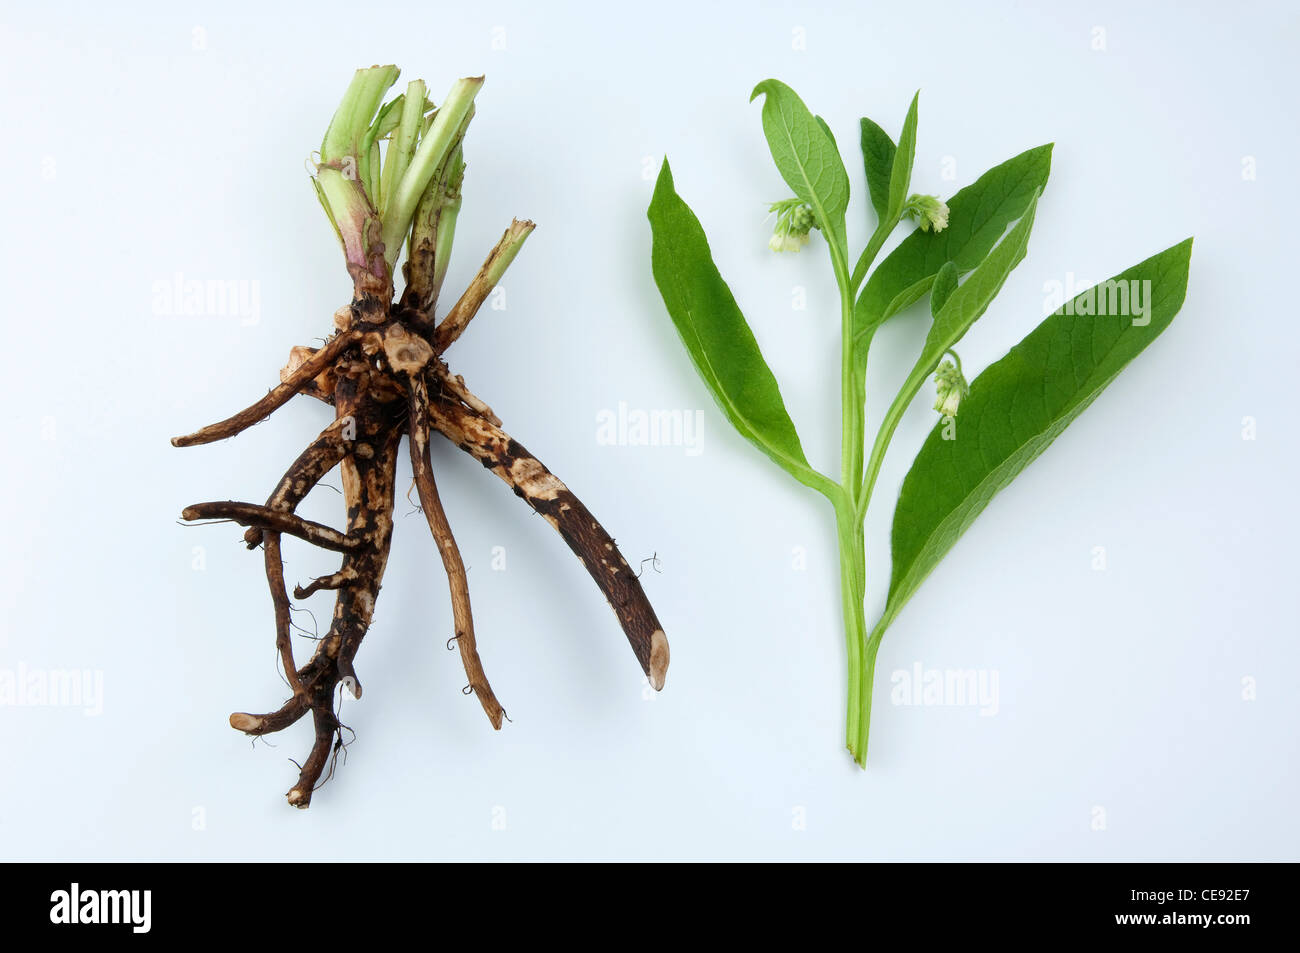 Comunes de consuelda (Symphytum officinale), raíces y el tallo floral, studio picture contra un fondo blanco. Foto de stock